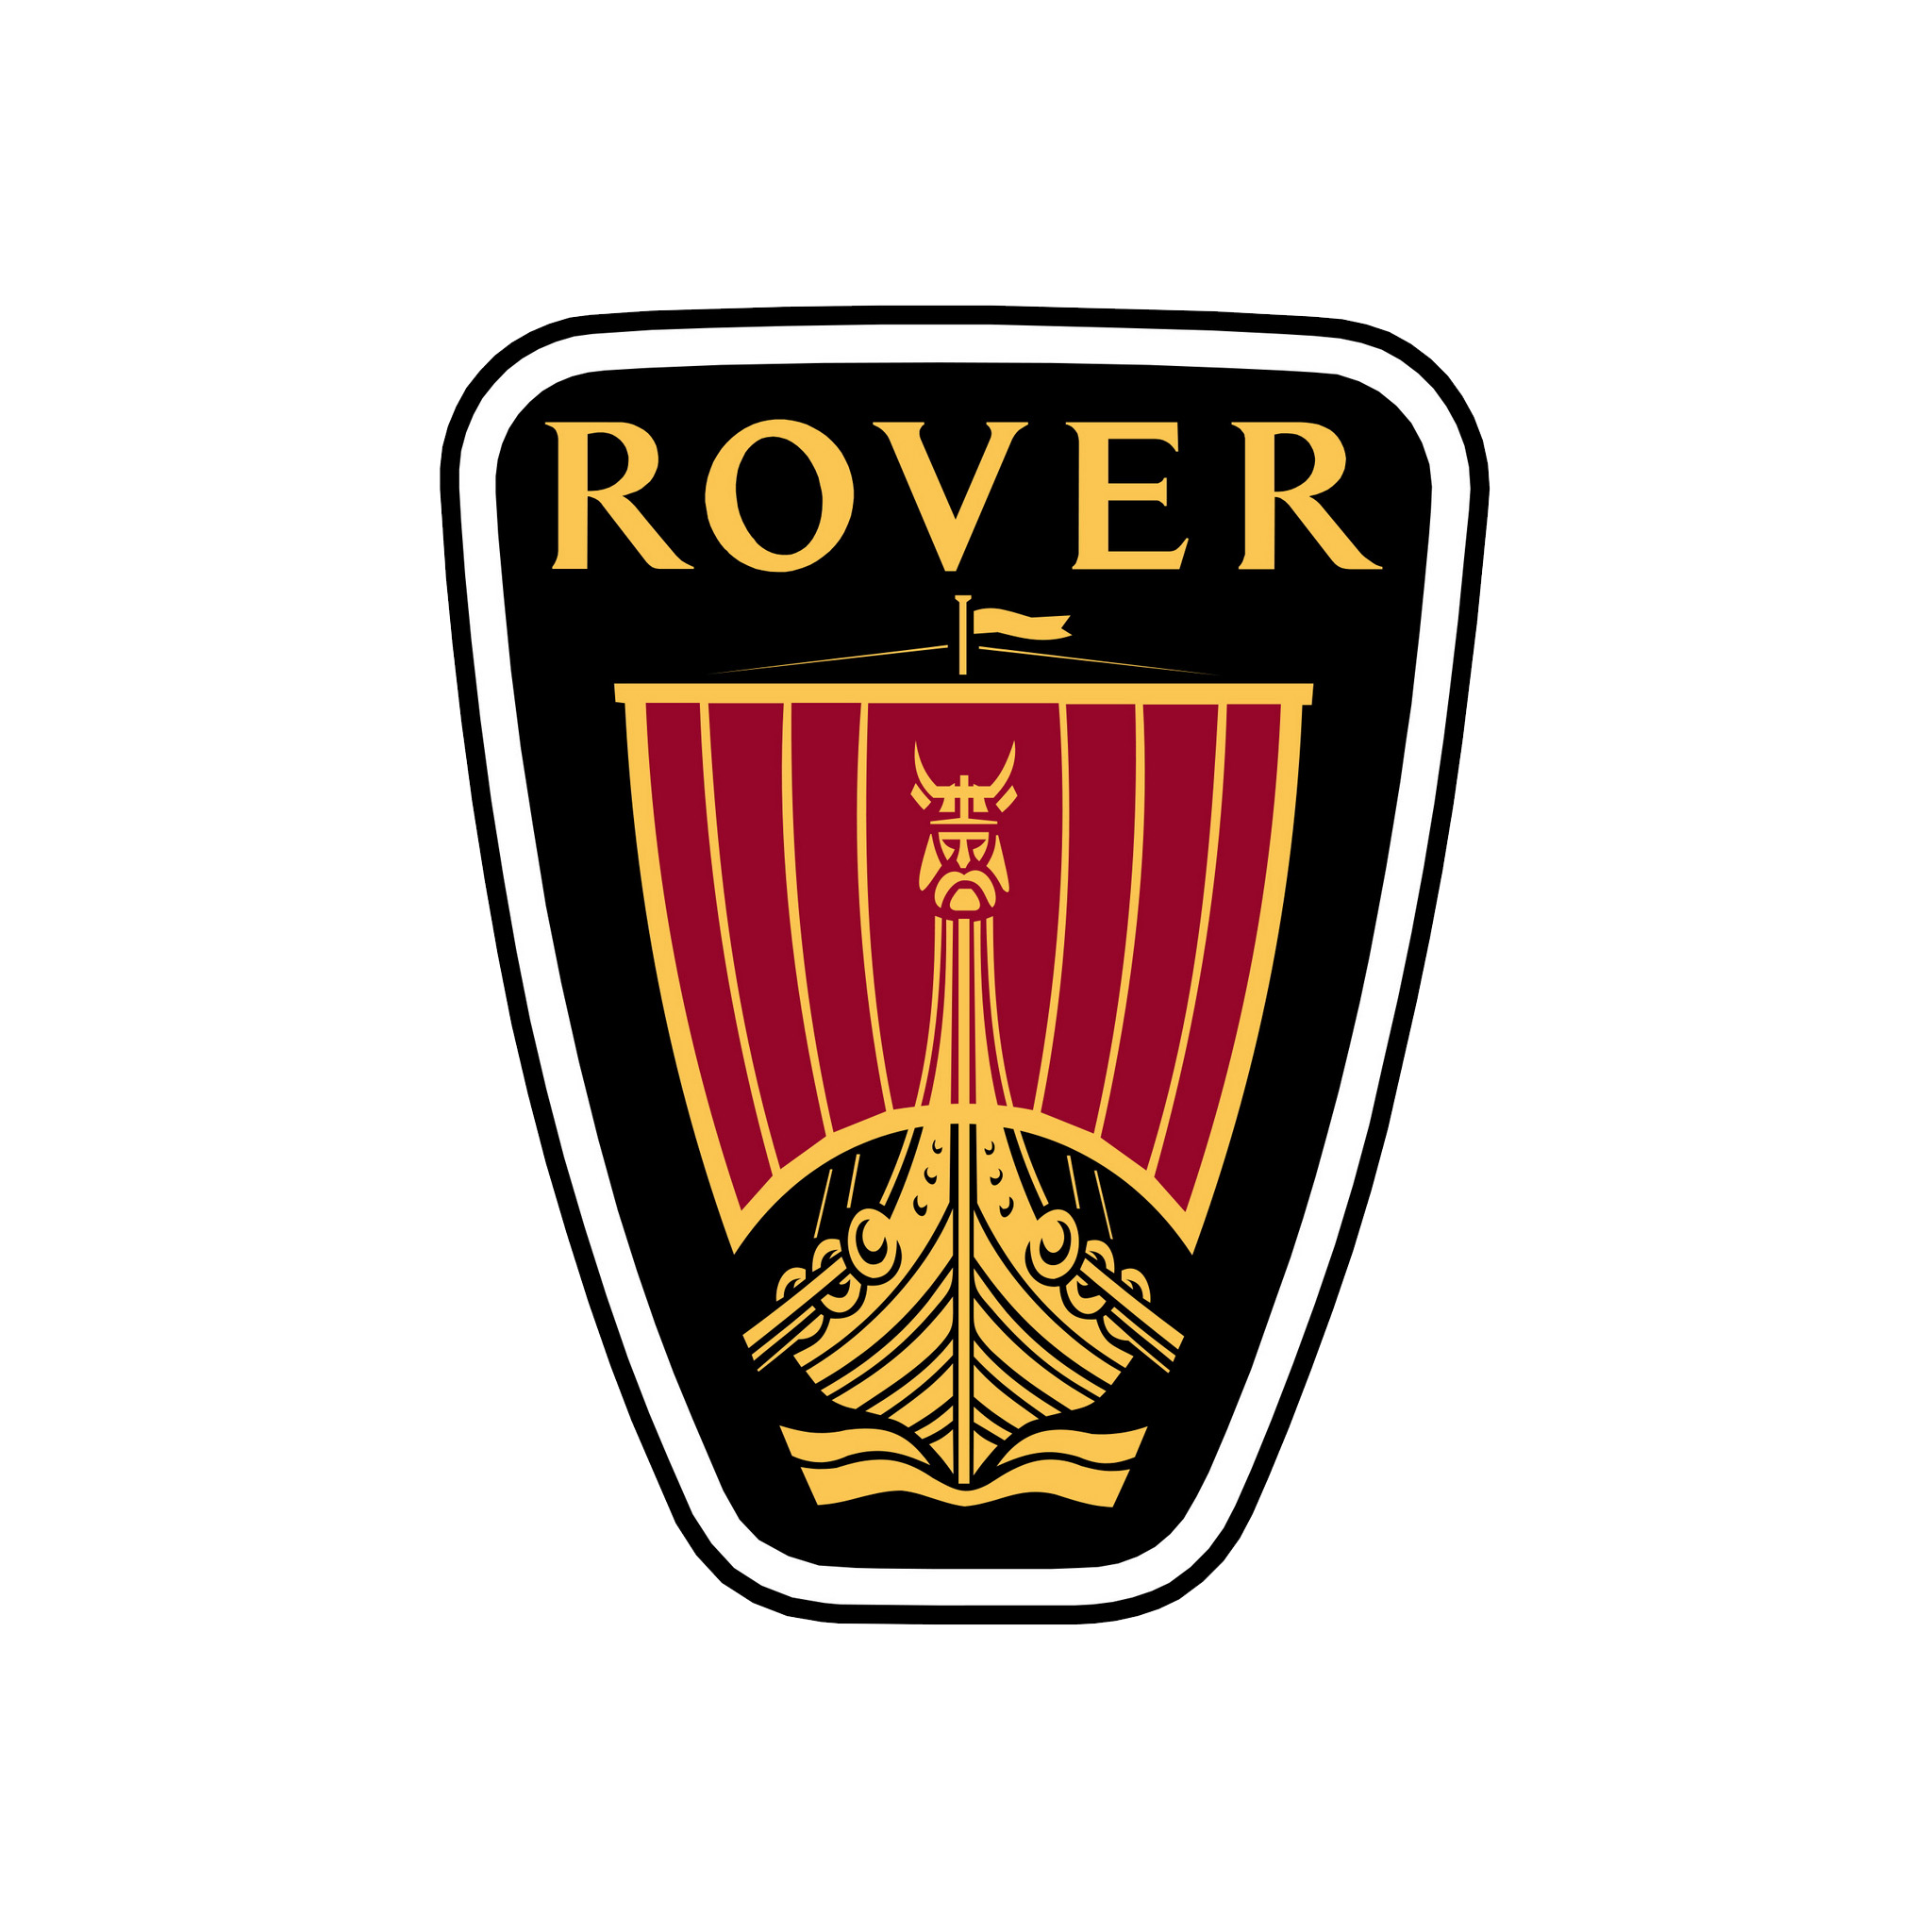 Rover Logo (1979) 1440x900 HD